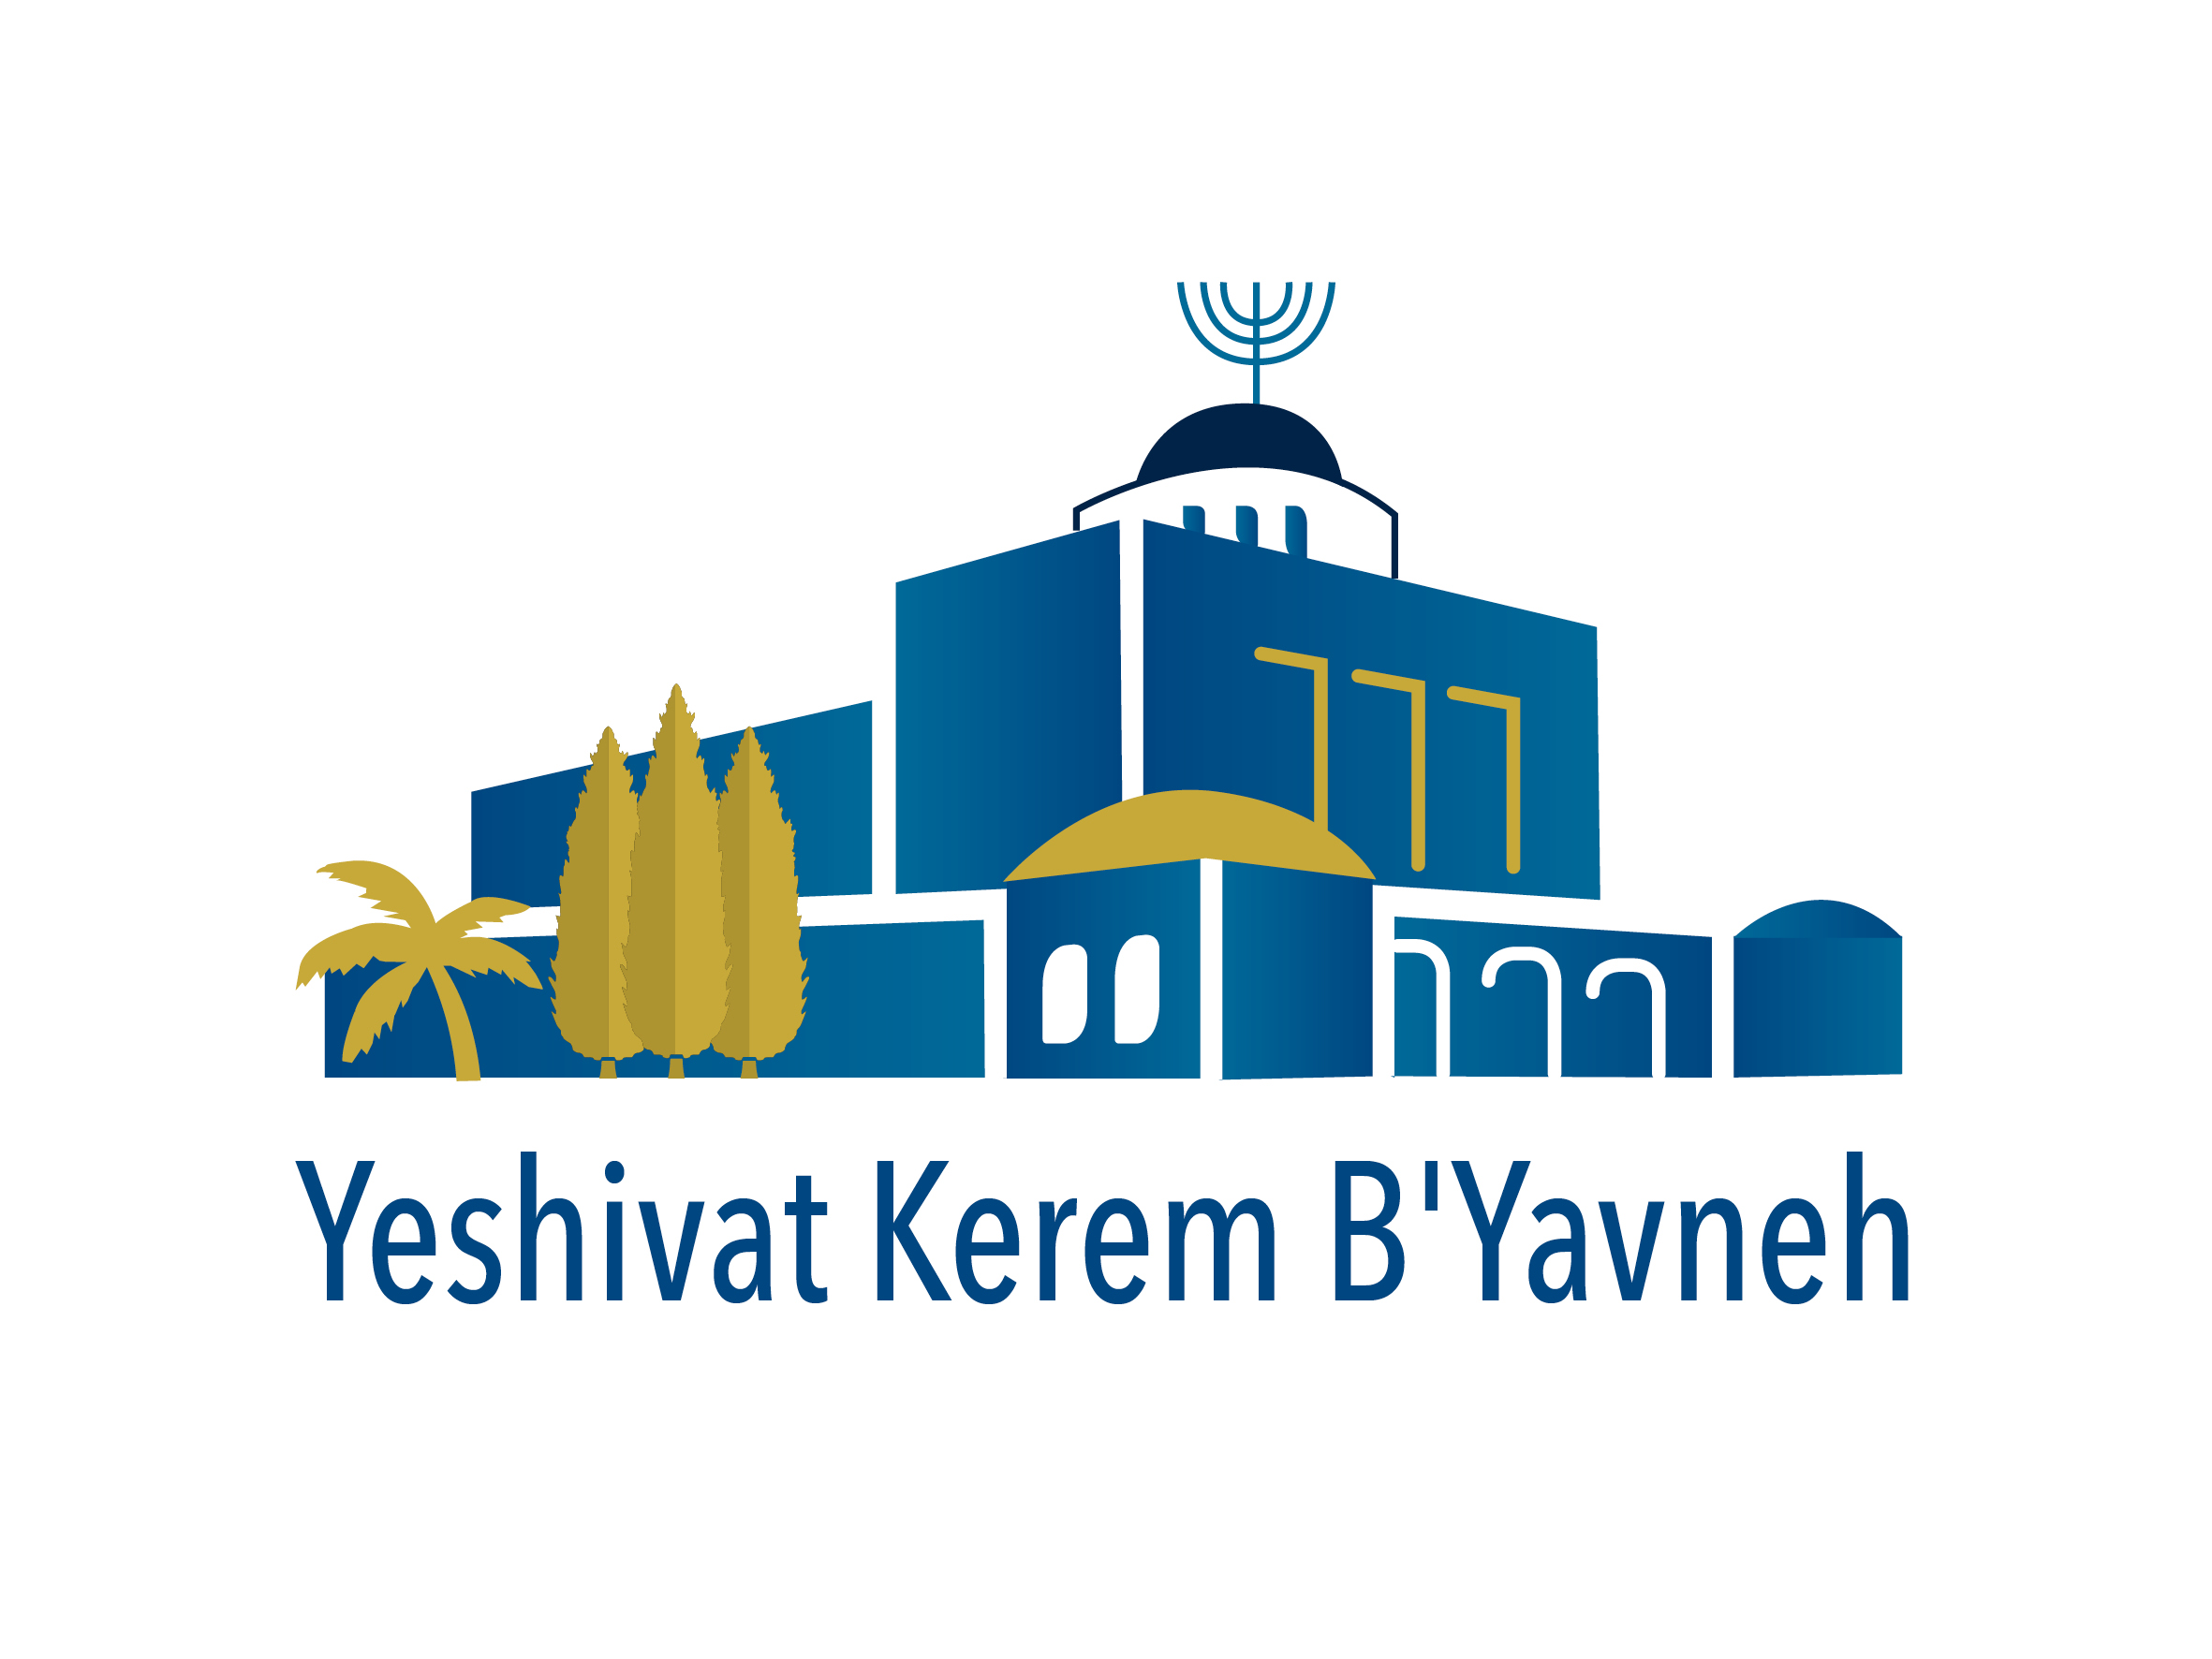 Yeshivat Kerem B'Yavneh